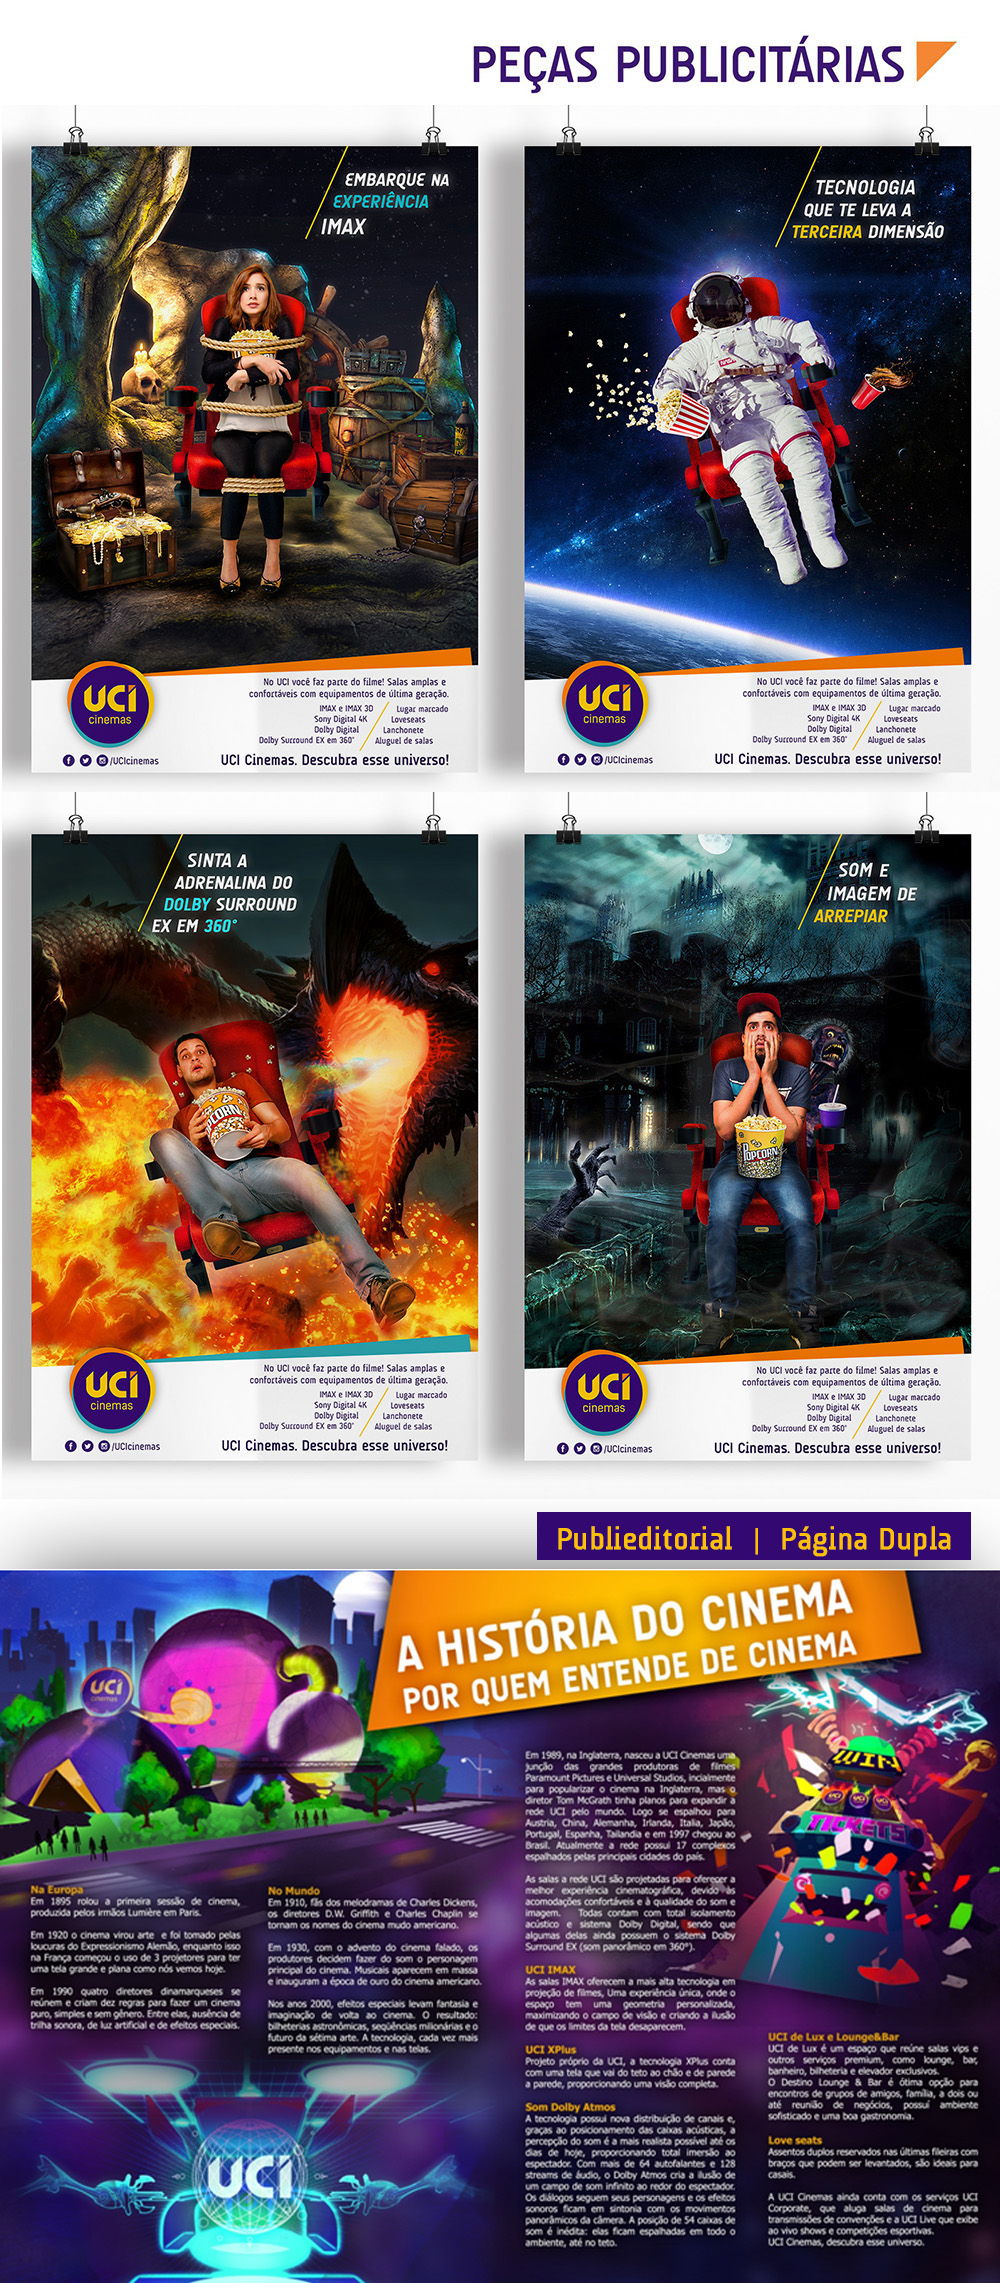 design Rebrand ad cinemas uci Cinema UCI Cinemas comunicação publicidade anúncio campanha publicitária